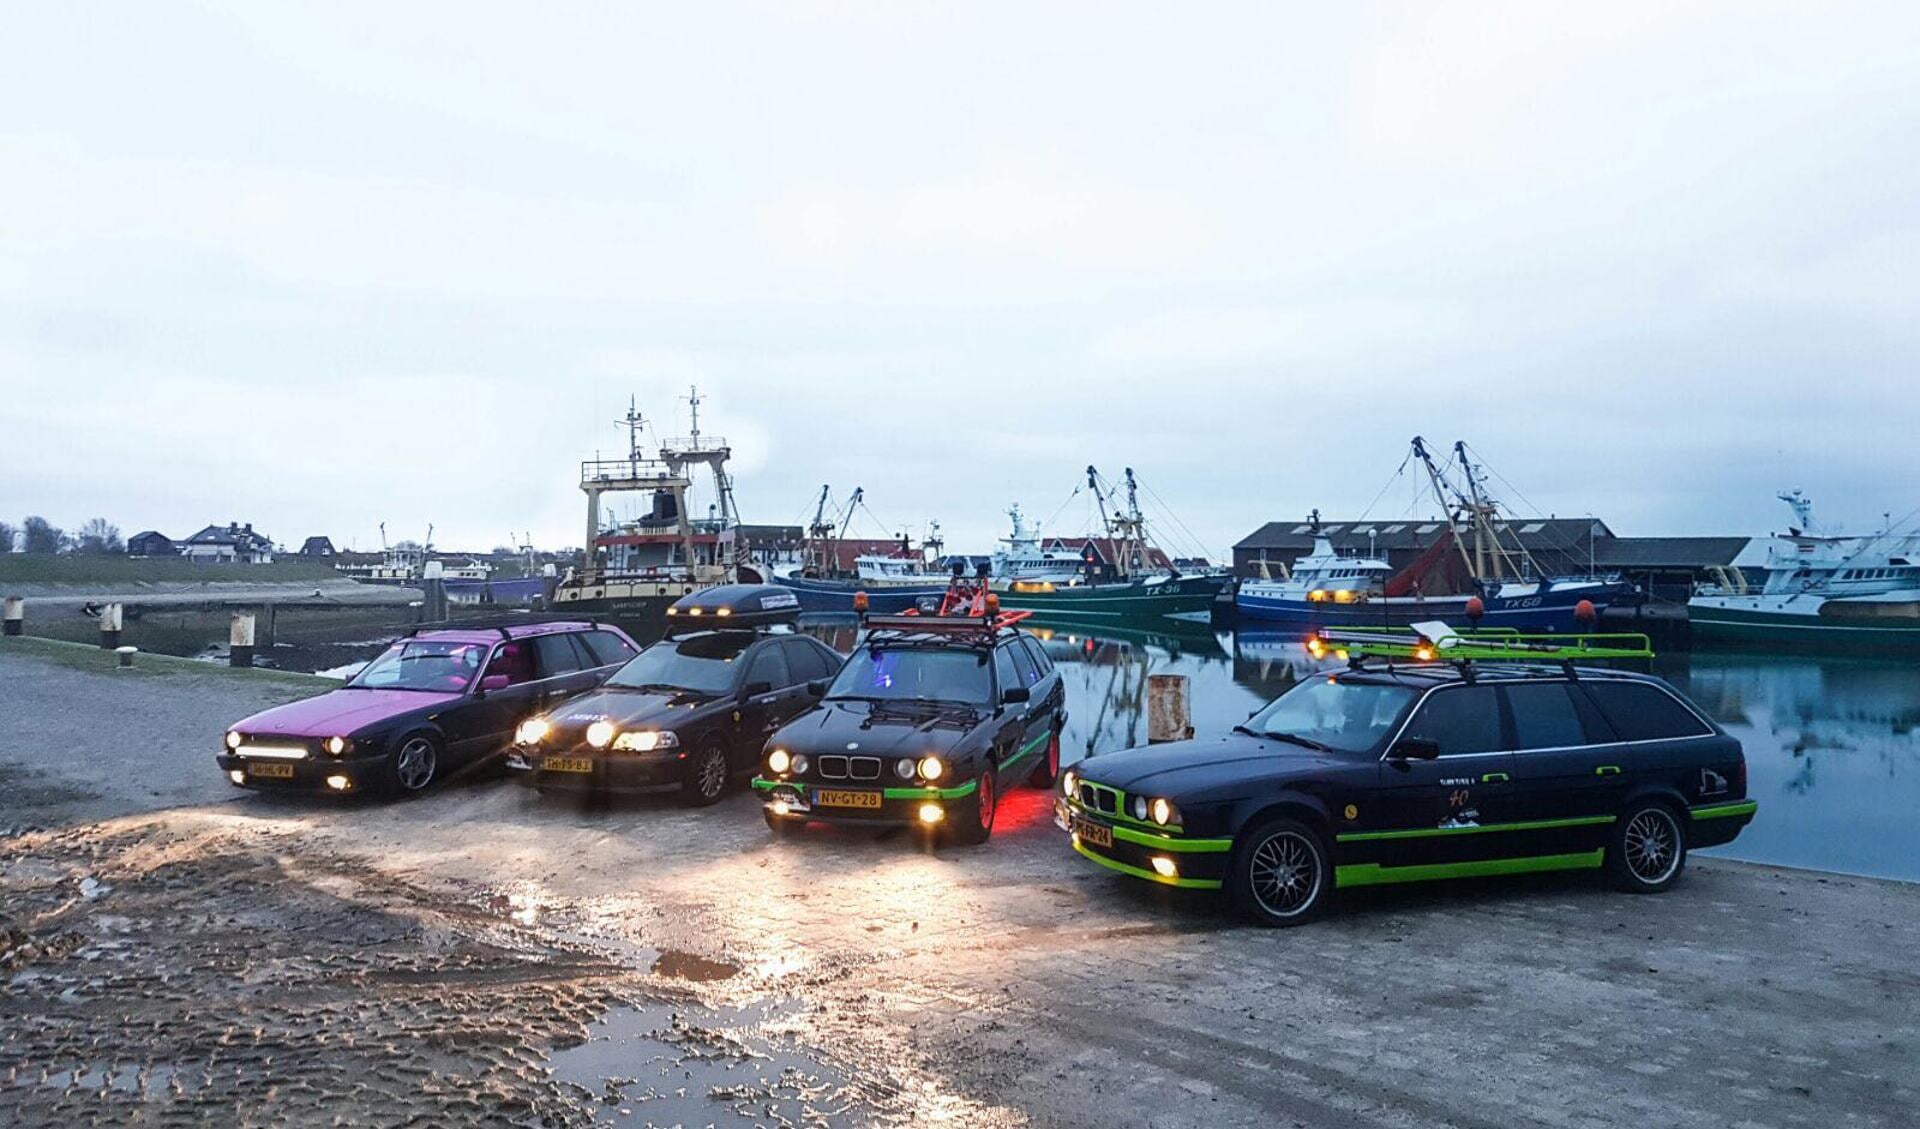 De gepimpte auto's waarmee de Texelaars mee doen aan de avontuurlijke rit door onder meer Scandinavië. 